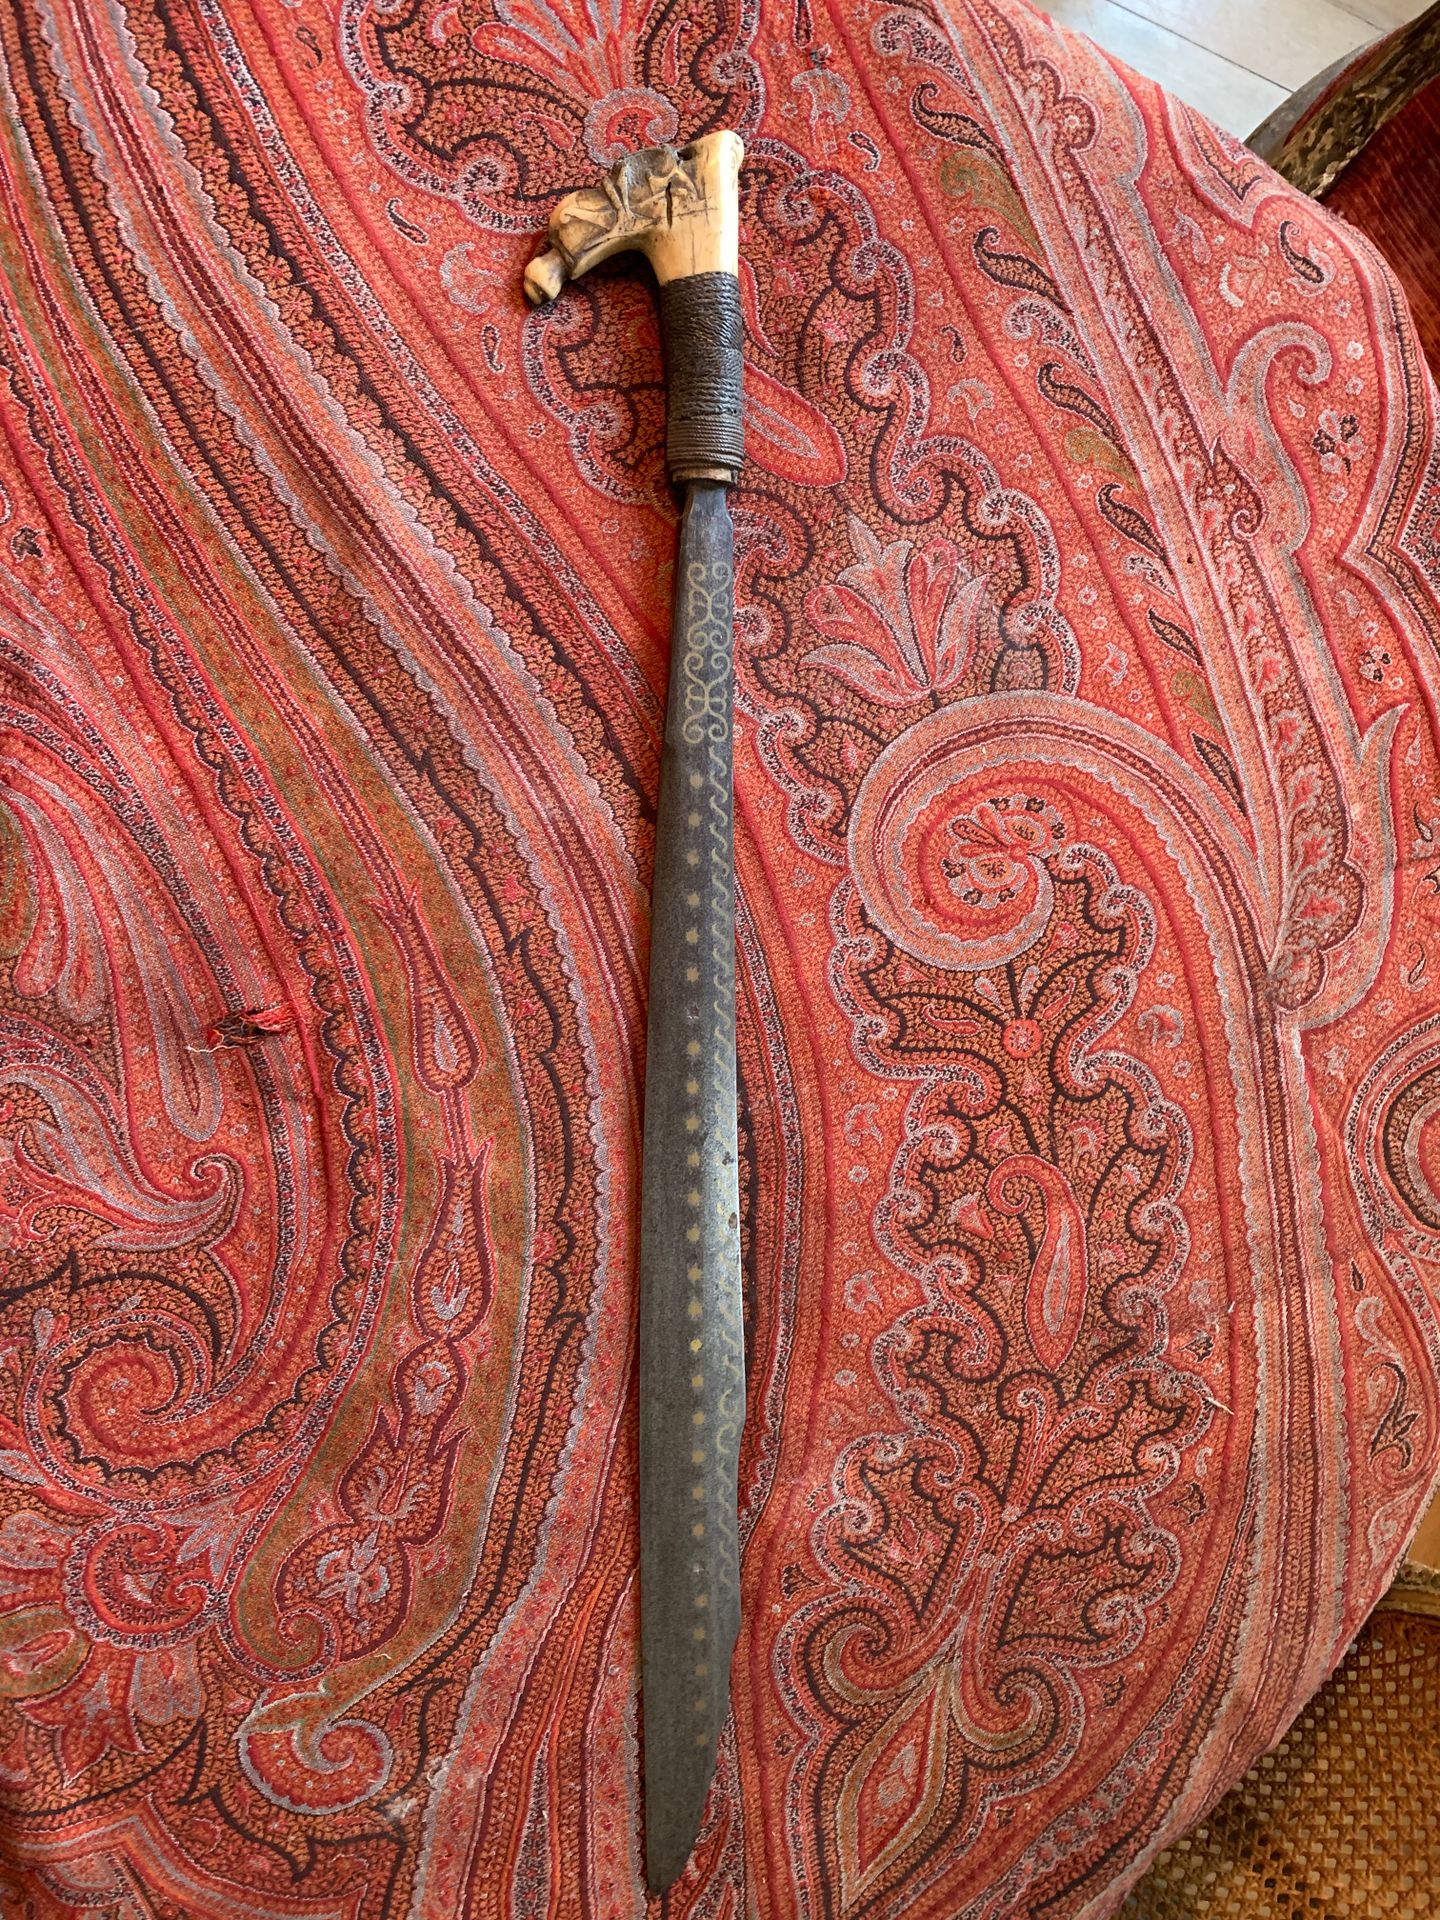 Null 大刀，钢制刀身，装饰有铜质镶嵌和卷轴。手柄上雕刻着风格化的装饰。

印度尼西亚的工作。

长度：64厘米